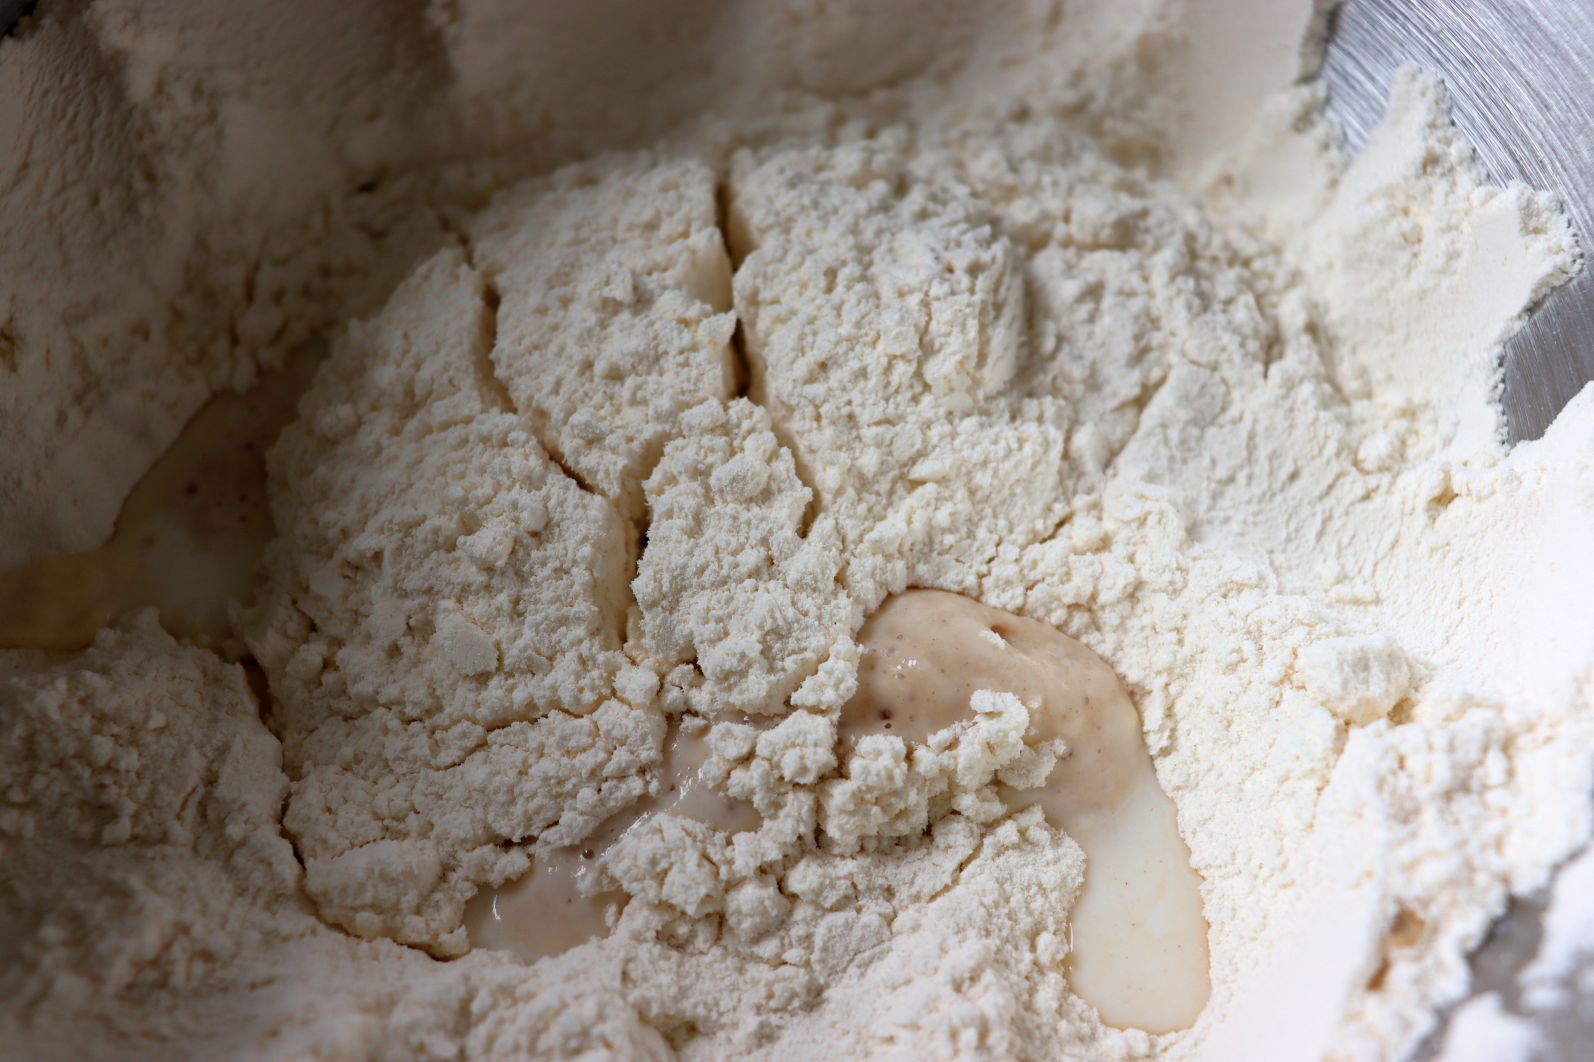 Yeast dough preparation: flour, salt, milk, sugar and yeast